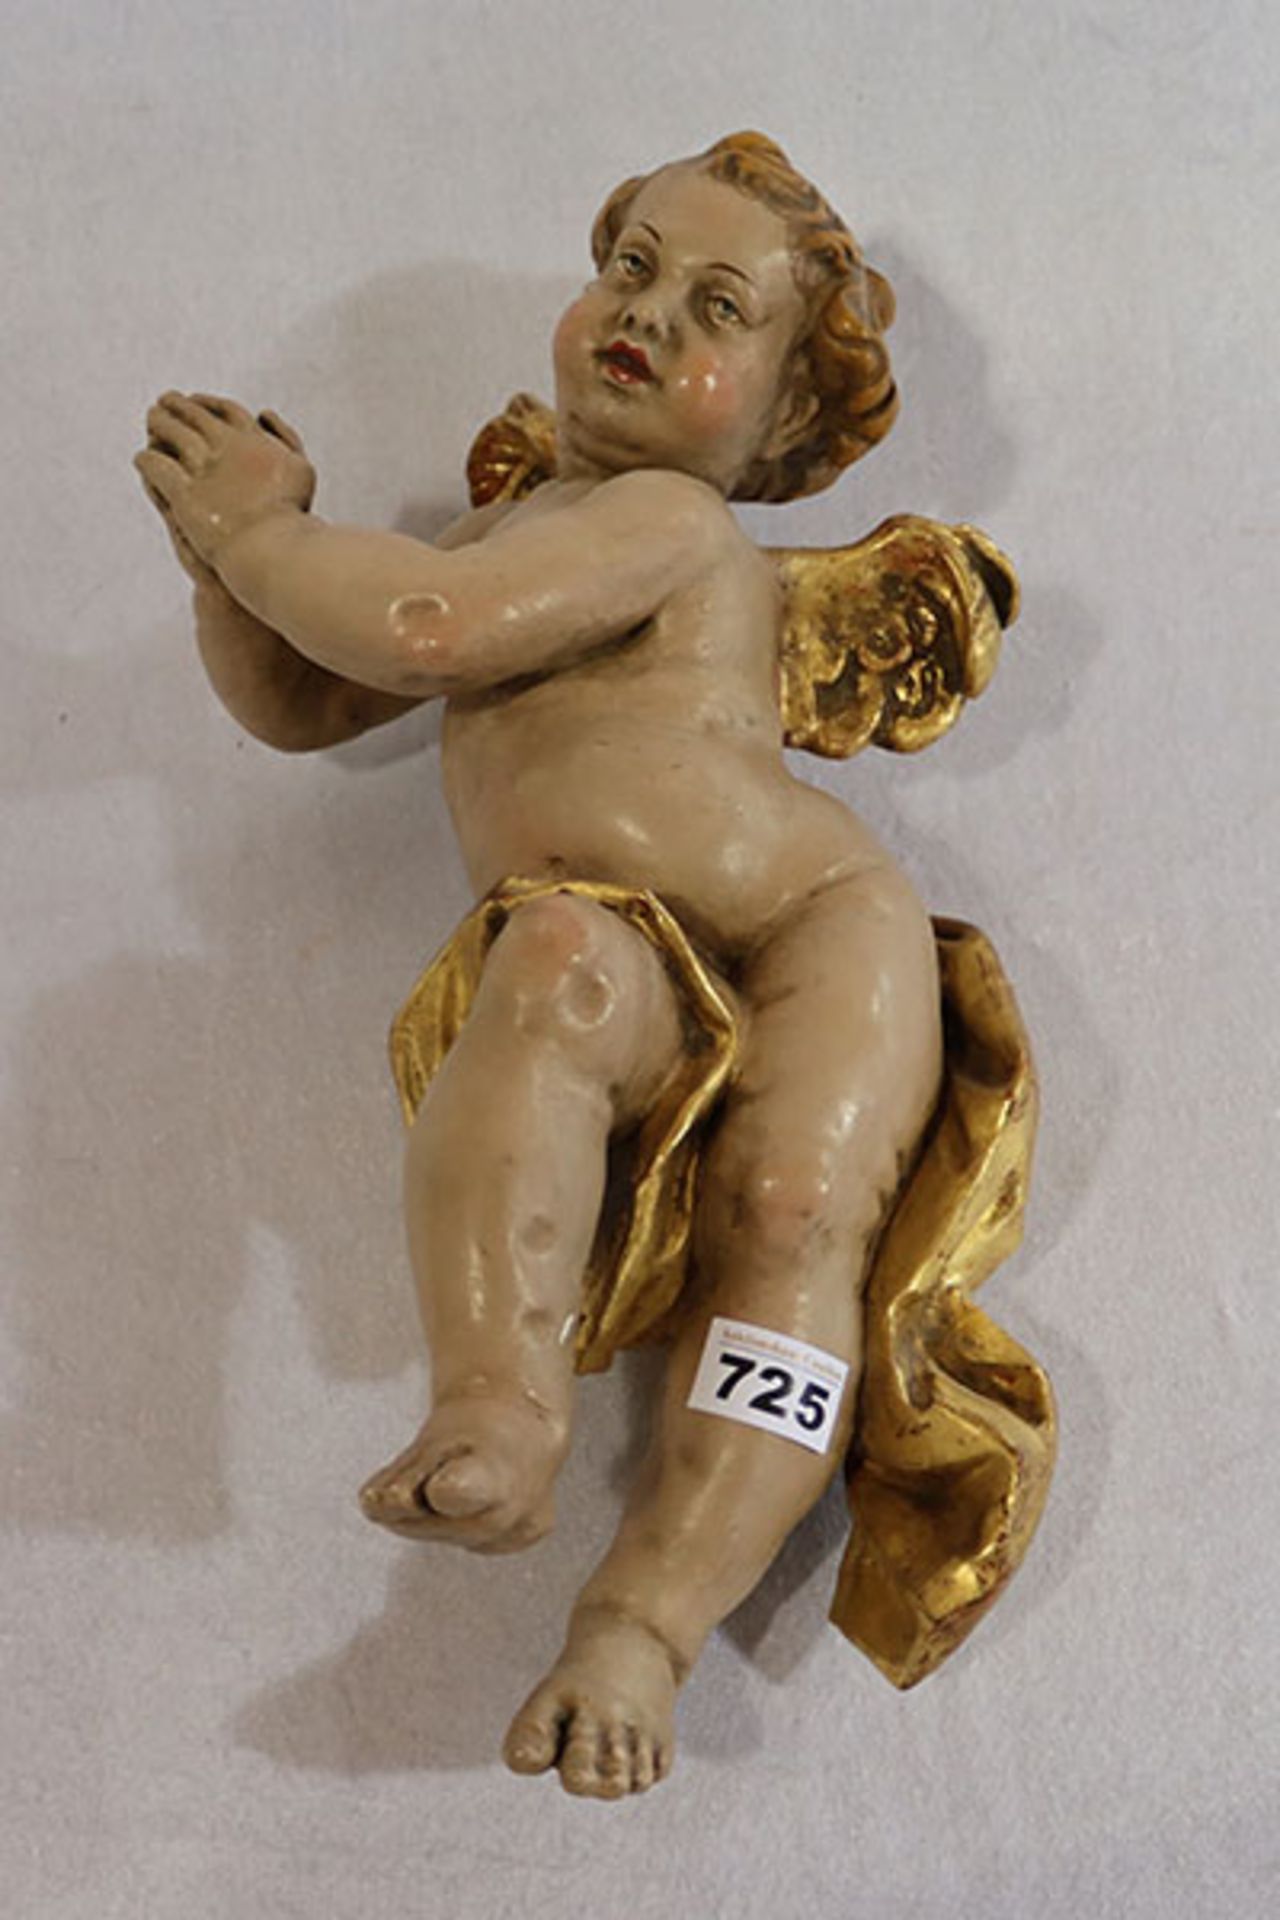 Holzfigur 'Engel', farbig gefaßt mit Blattgoldfassung, schöne Handarbeit, H 44 cm, leicht berieben